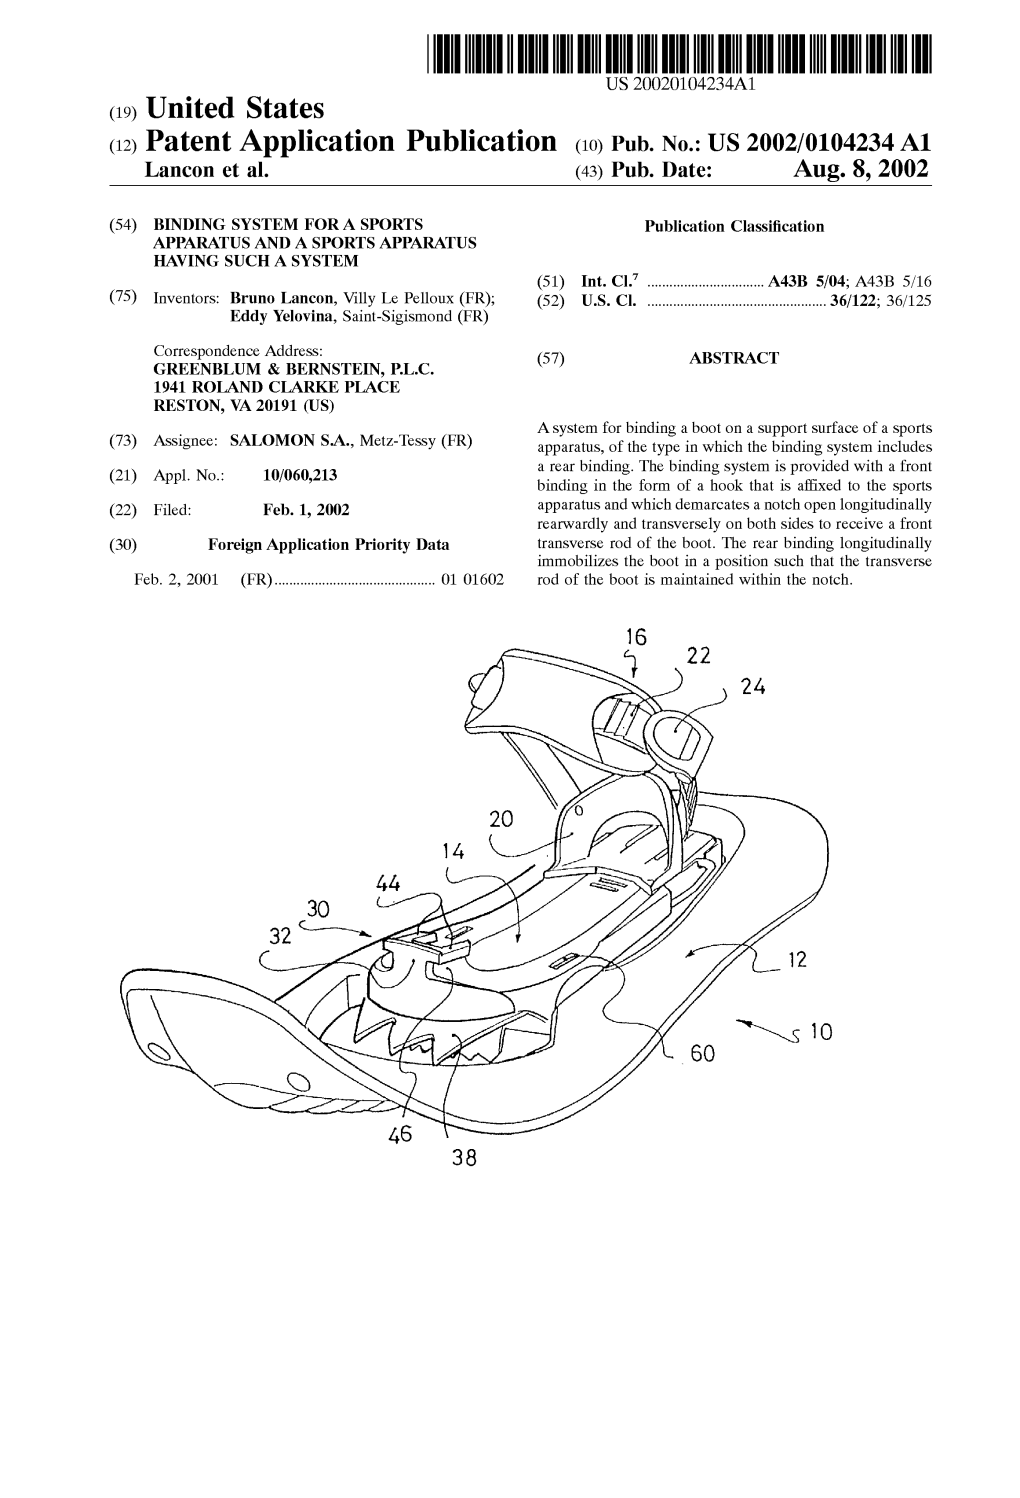 (12) Patent Application Publication (10) Pub. No.: US 2002/0104234 A1 Lancon Et Al